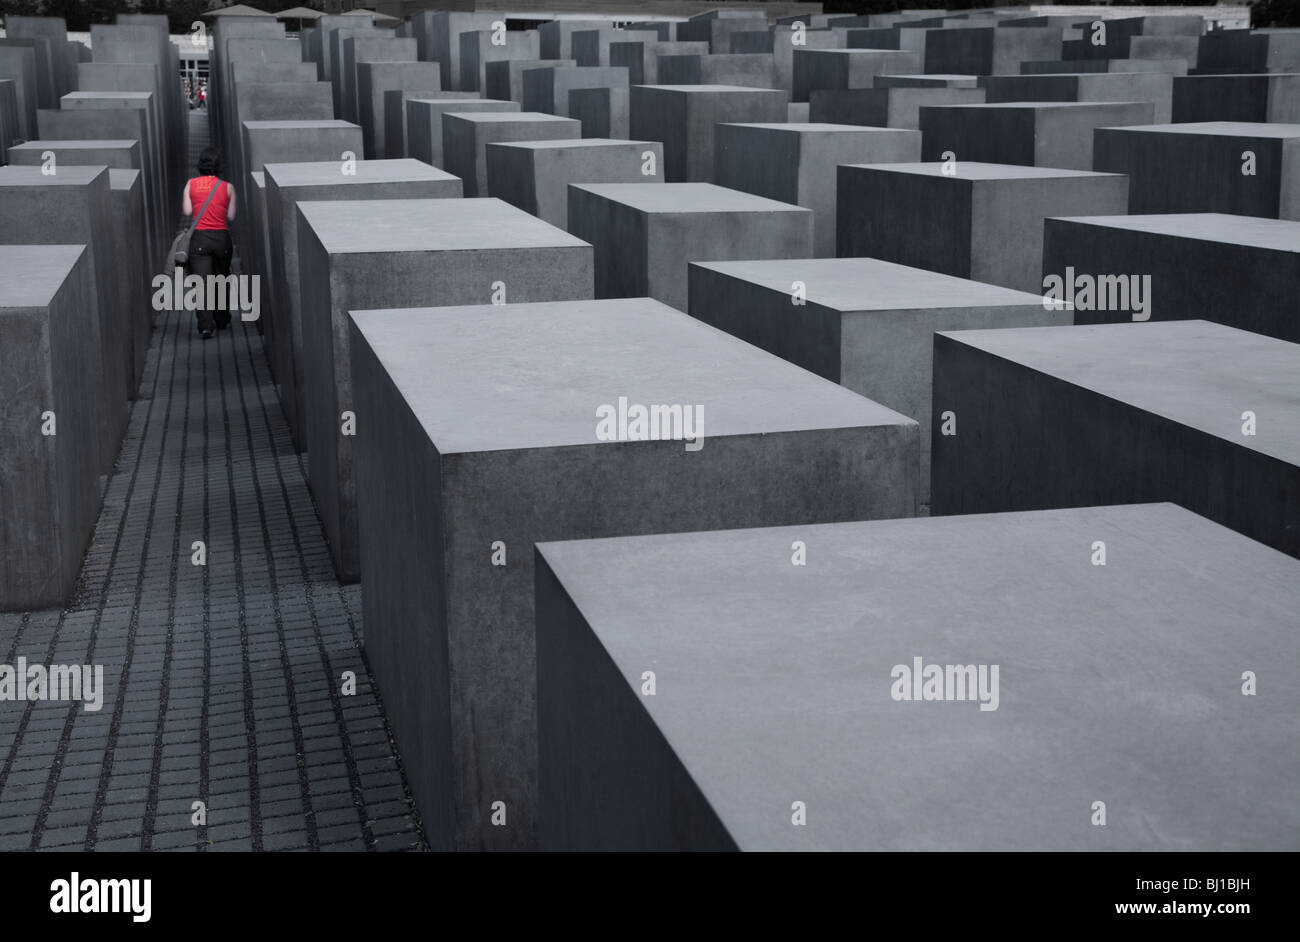 Mémorial de l'holocauste juif allemand Berlin, Allemagne Banque D'Images